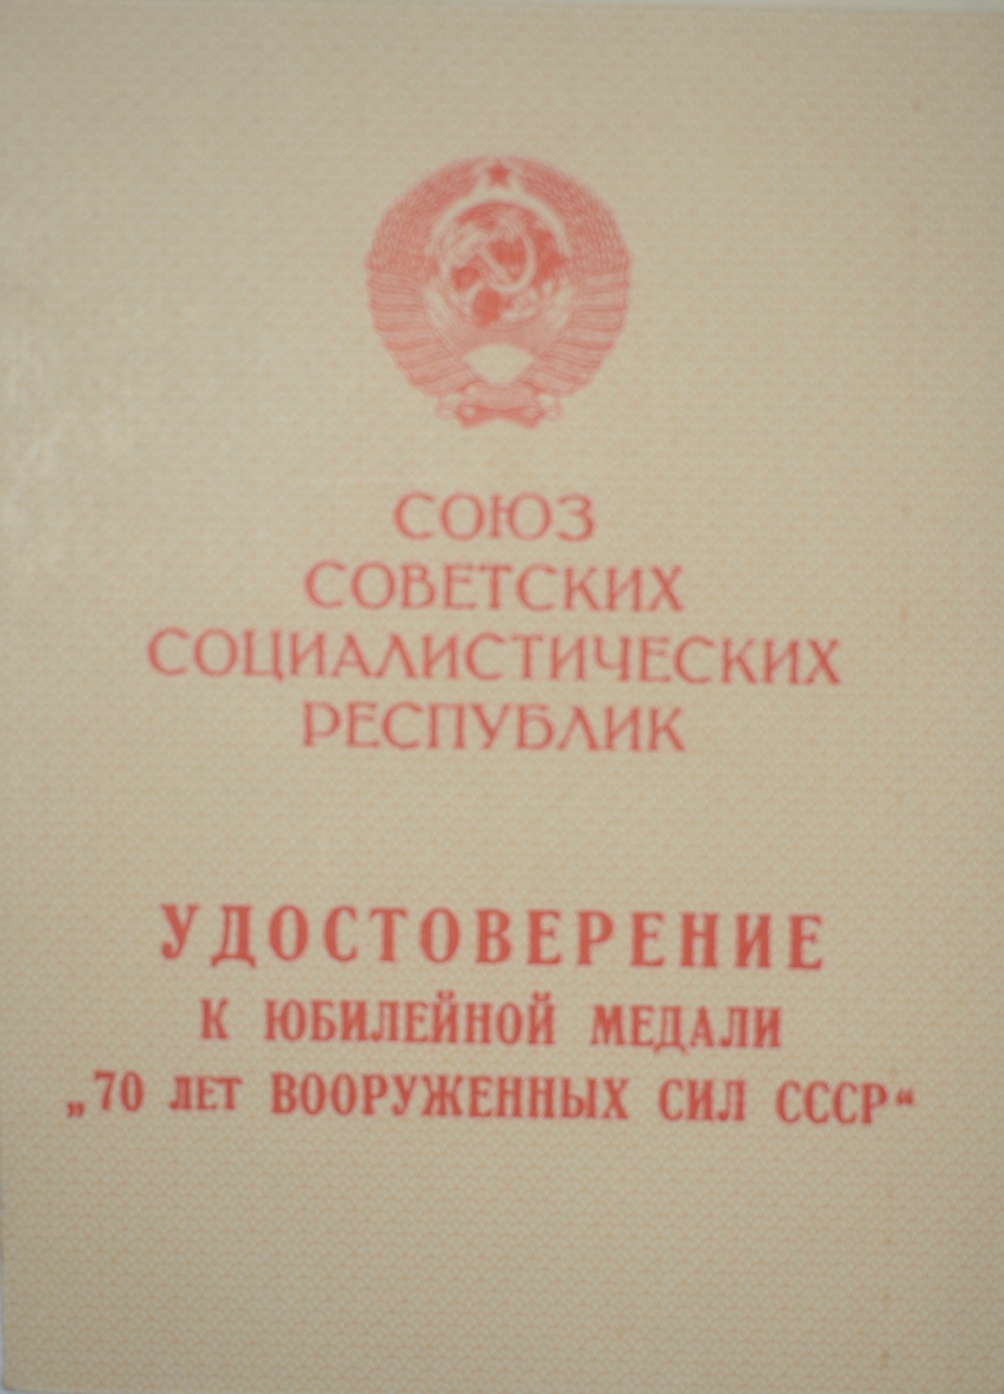 Посвідчення до ювілейної медалі "70 лет Вооруженных сил СССР"